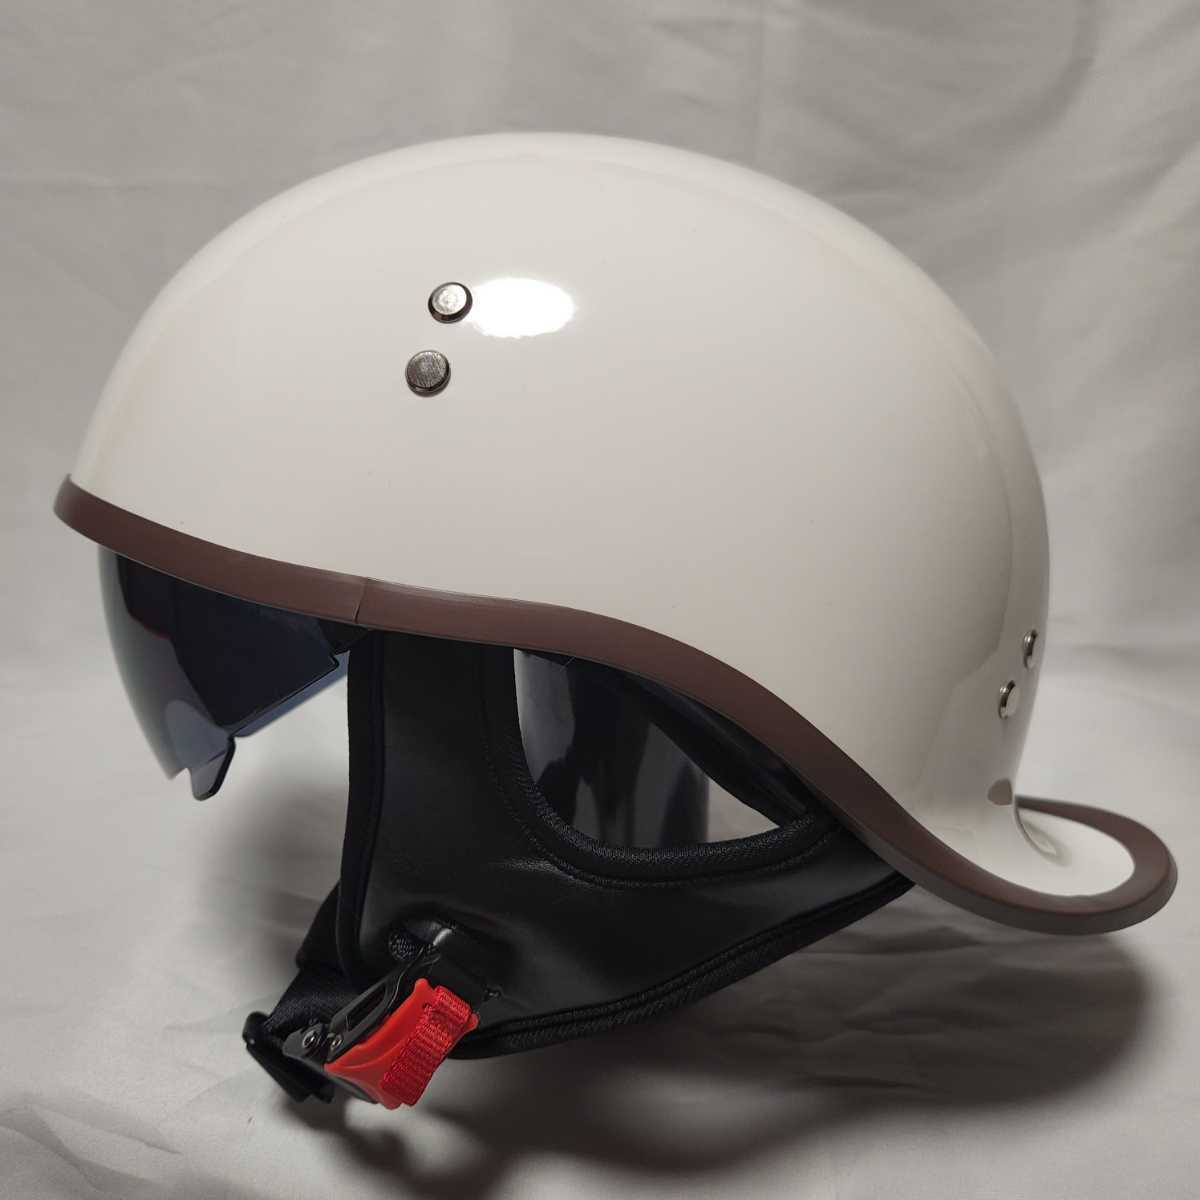 【国内即日発送】ダックテール ヘルメット バイザー付 ホワイト 軽量 半帽 キャップ型 半ヘル の画像1